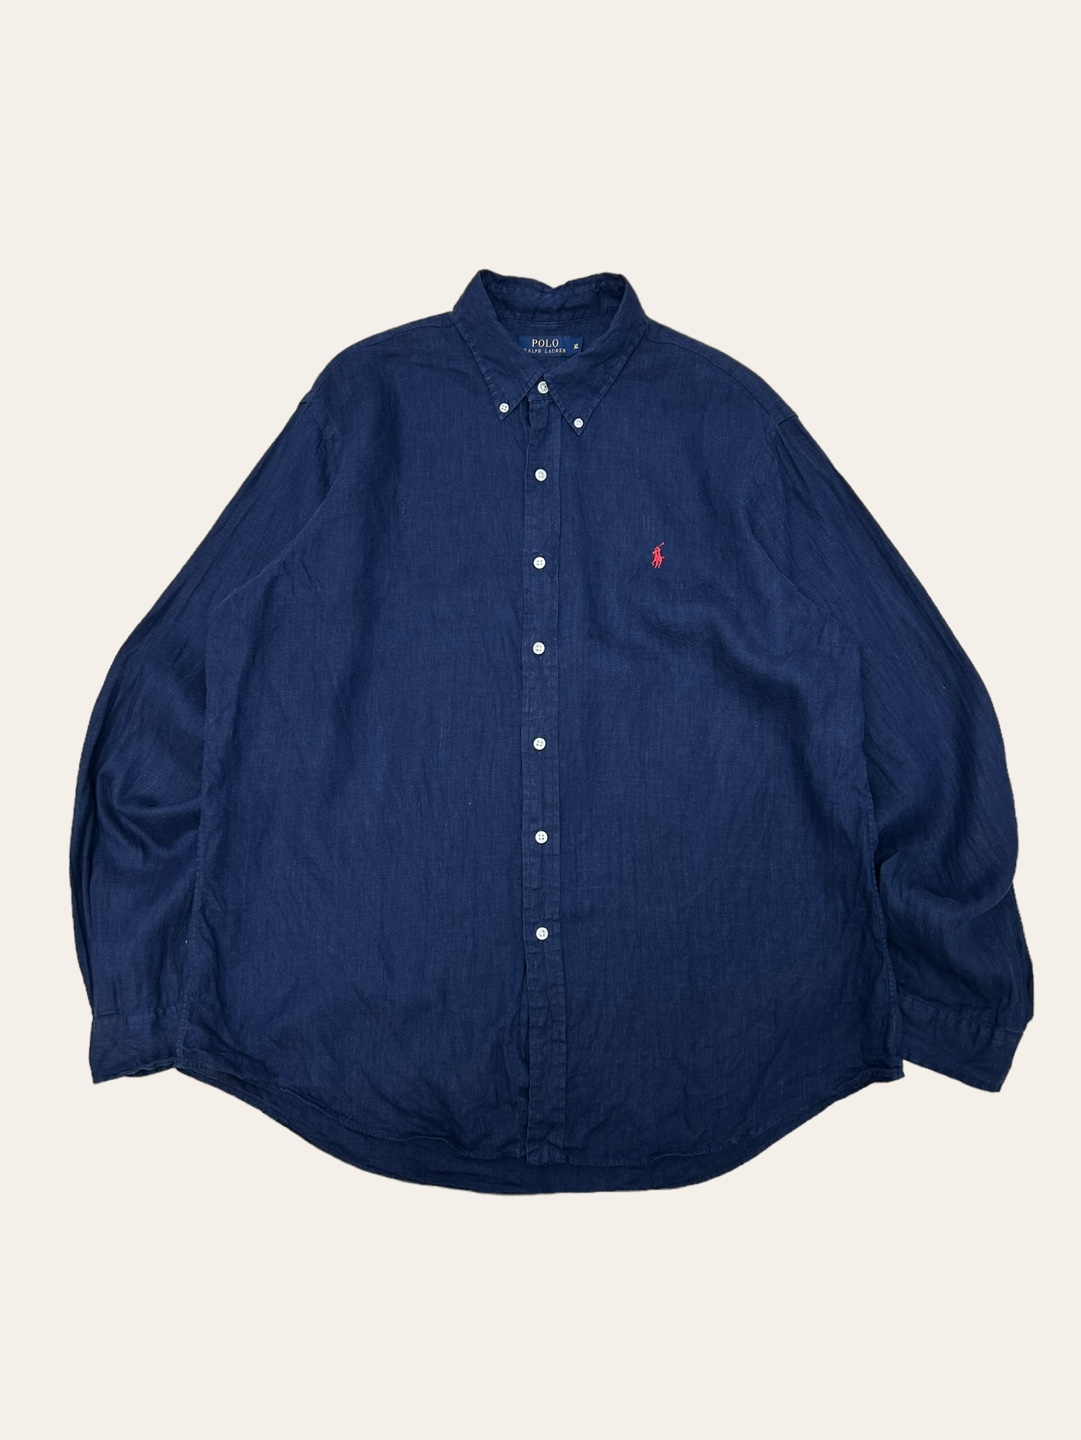 (From USA)Polo ralph lauren navy linen shirt XL